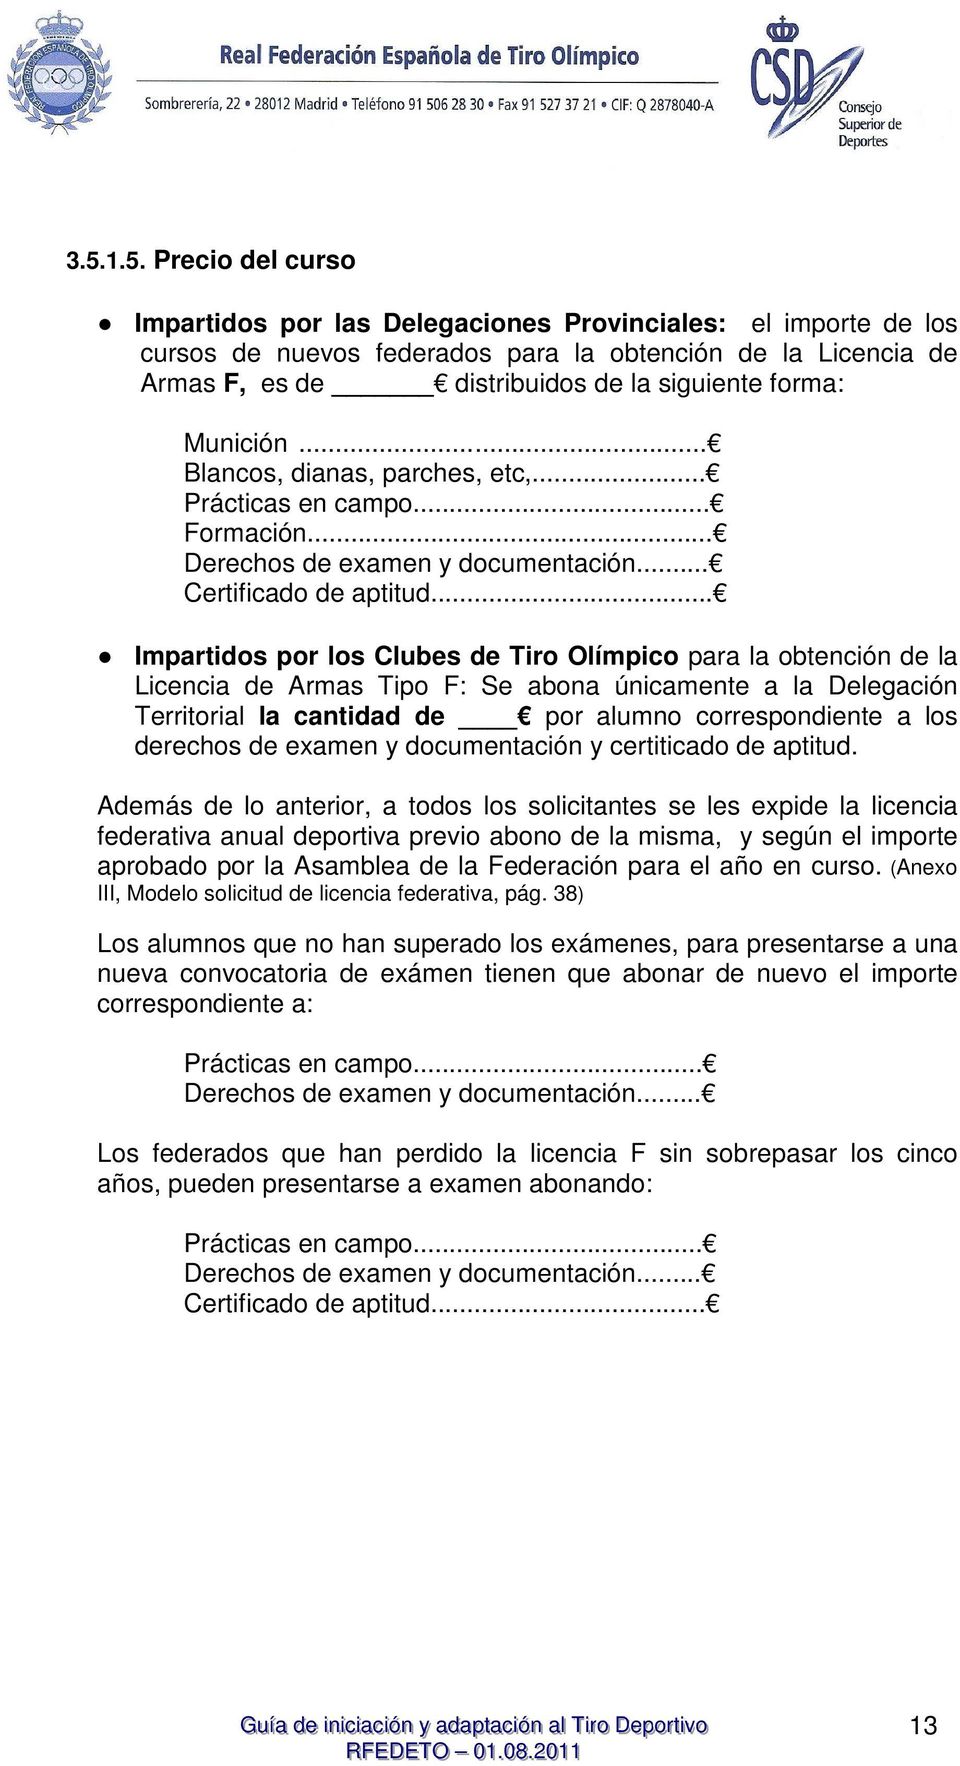 .. Impartidos por los Clubes de Tiro Olímpico para la obtención de la Licencia de Armas Tipo F: Se abona únicamente a la Delegación Territorial la cantidad de por alumno correspondiente a los